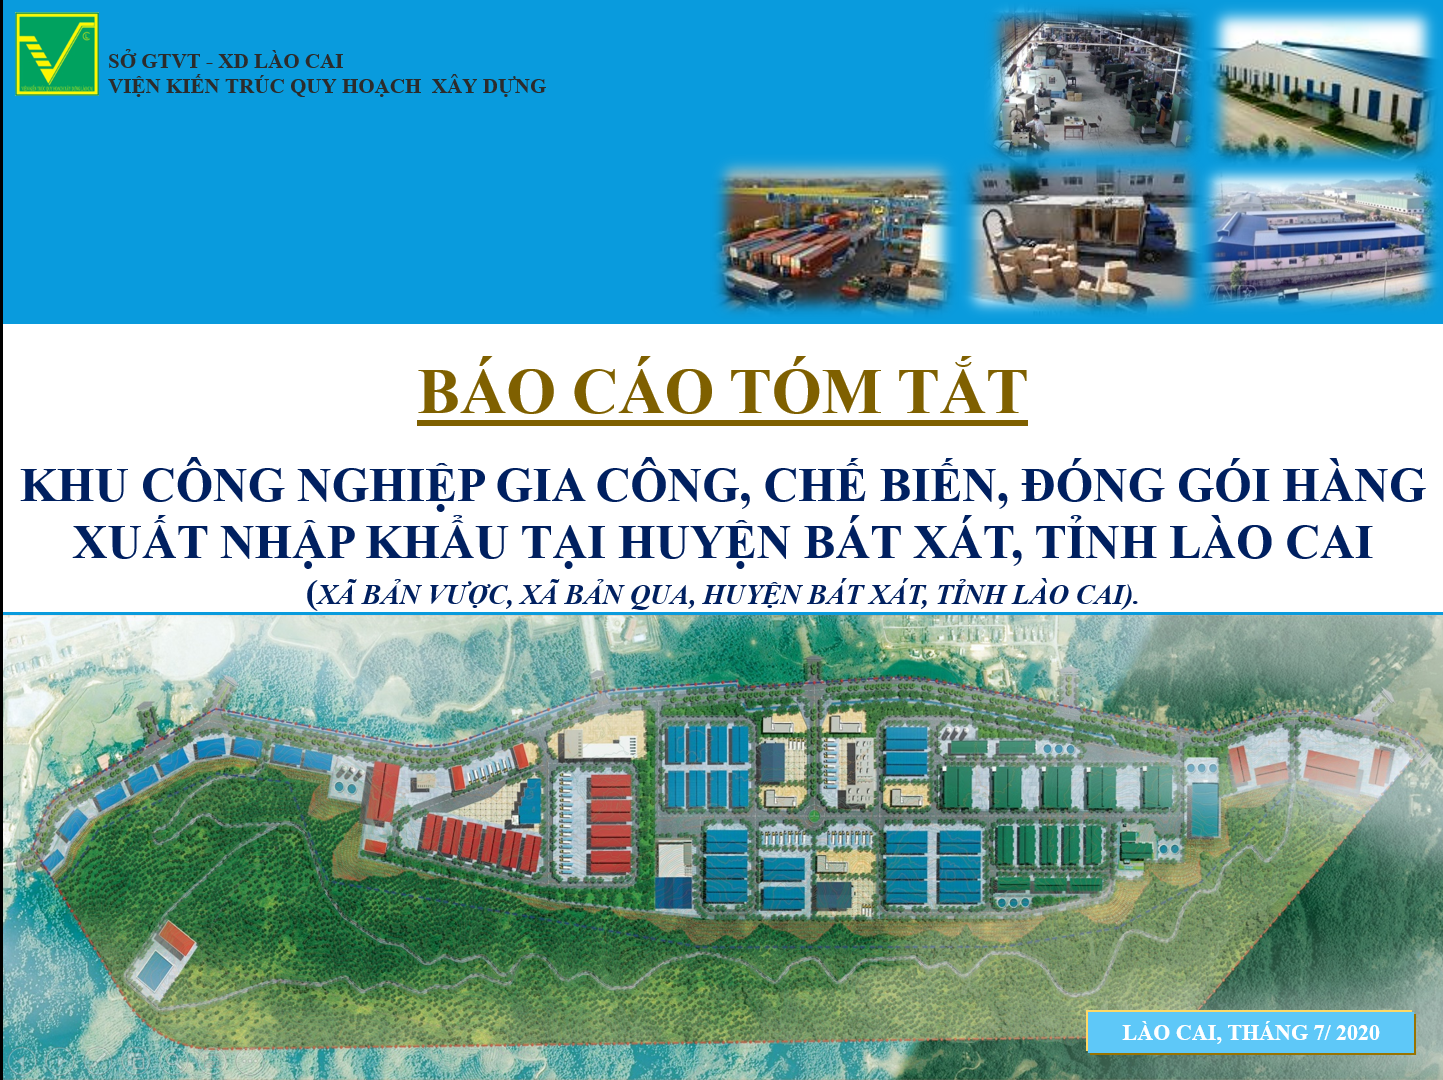 Tham vấn ý kiến cộng đồng phương án quy hoạch khu công nghiệp gia công, chế biến, đóng gói hàng xuất nhập khẩu tại huyện Bát Xát, tỉnh Lào Cai